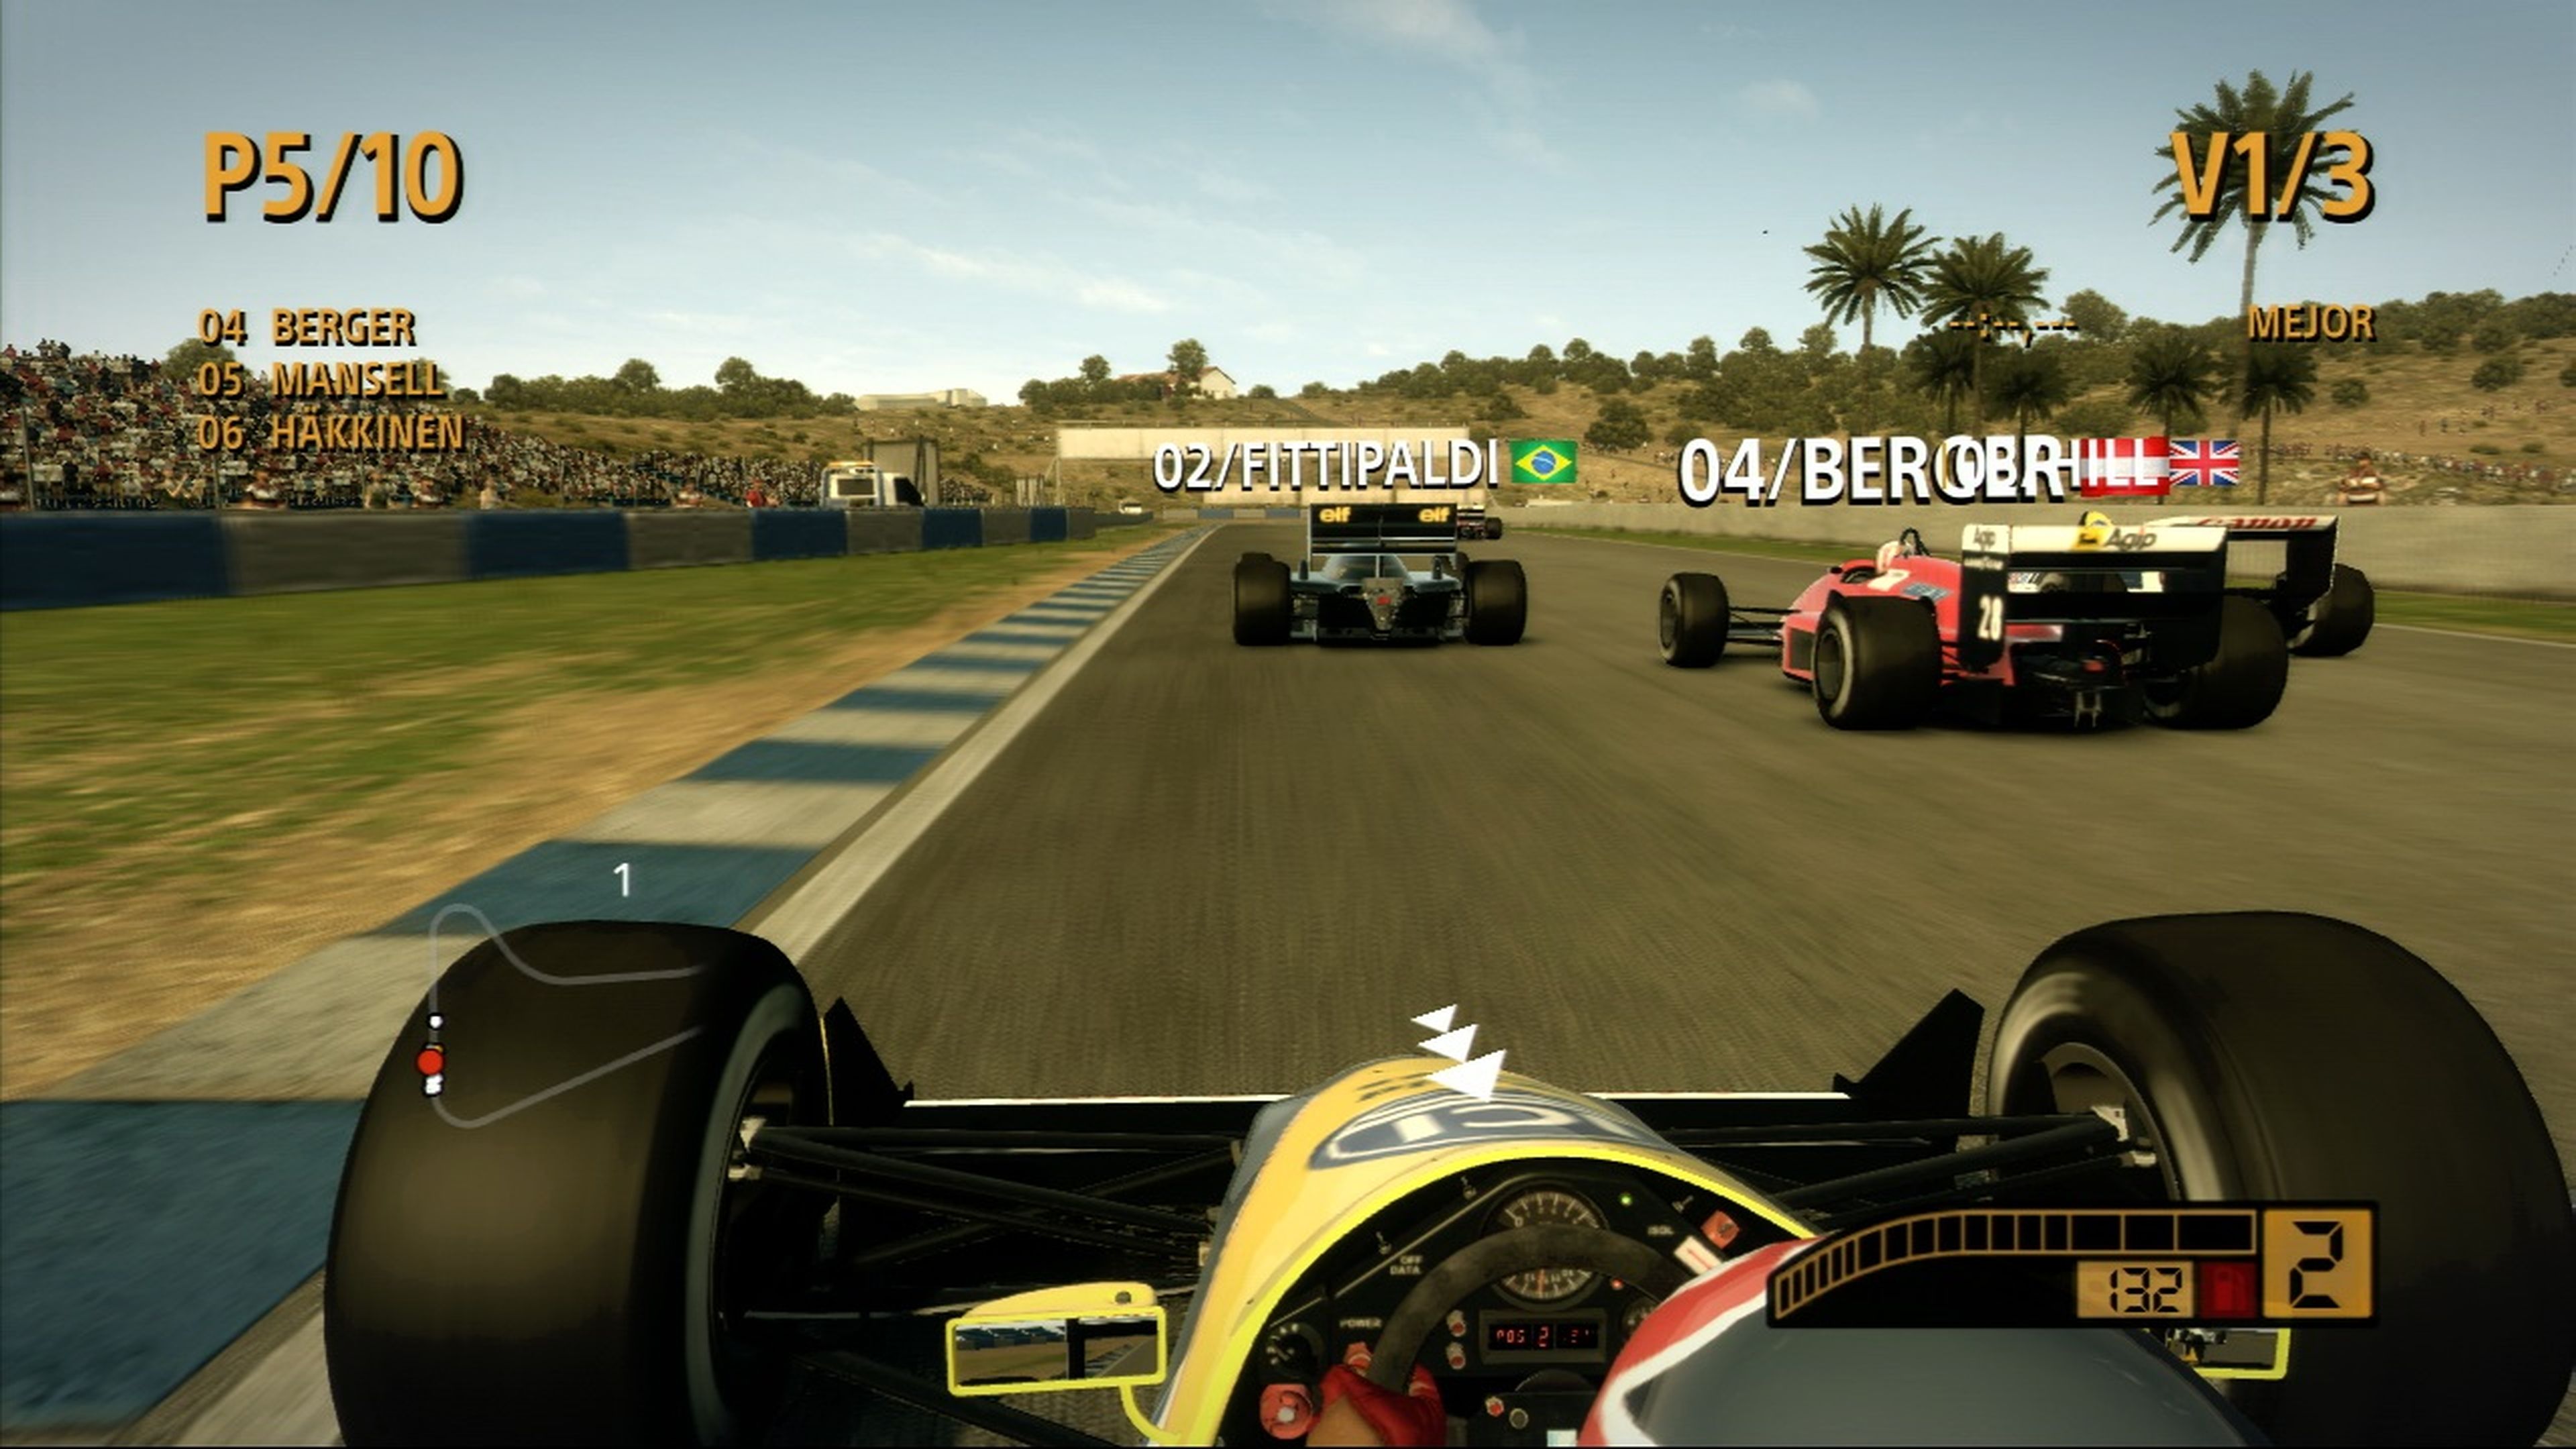 Análisis de F1 2013 para PS3, Xbox 360 y PC